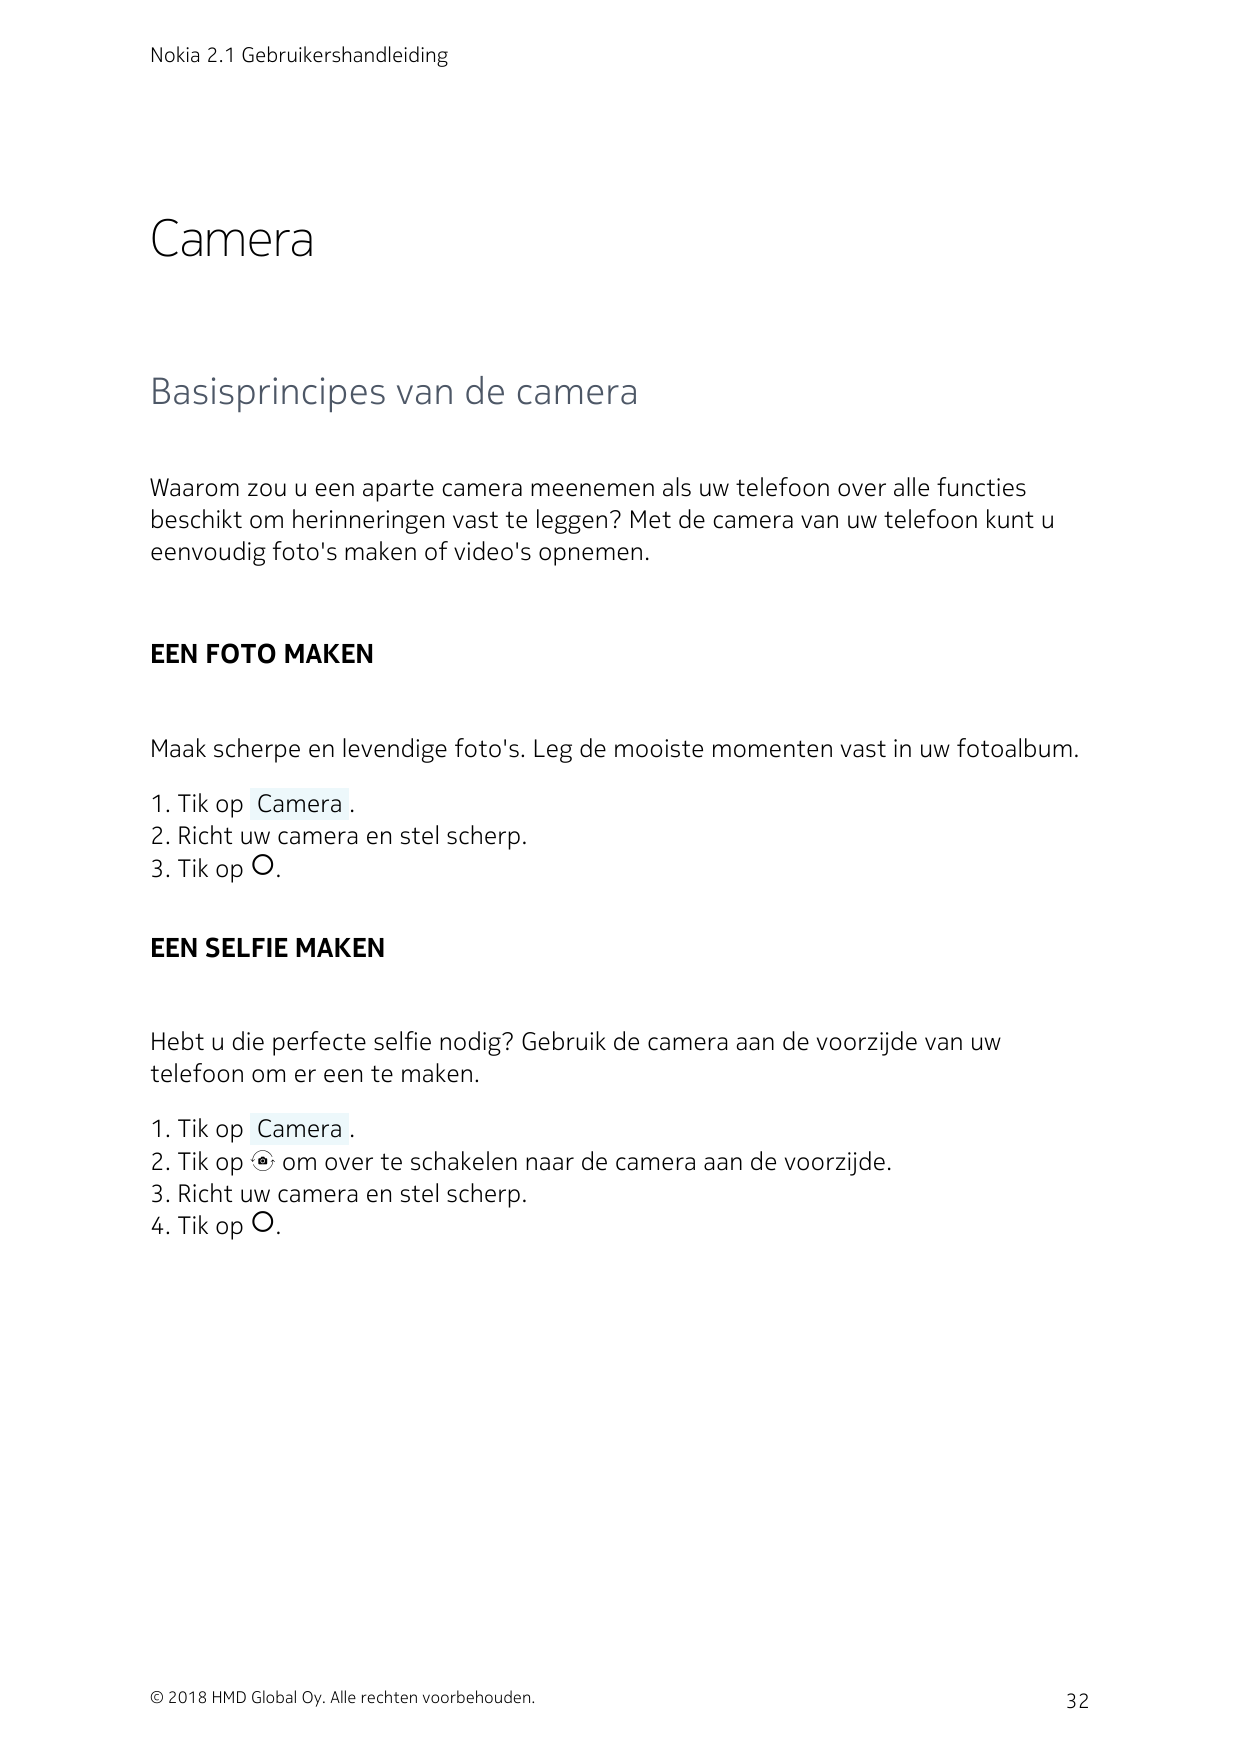 Nokia 2.1 GebruikershandleidingCameraBasisprincipes van de cameraWaarom zou u een aparte camera meenemen als uw telefoon over al